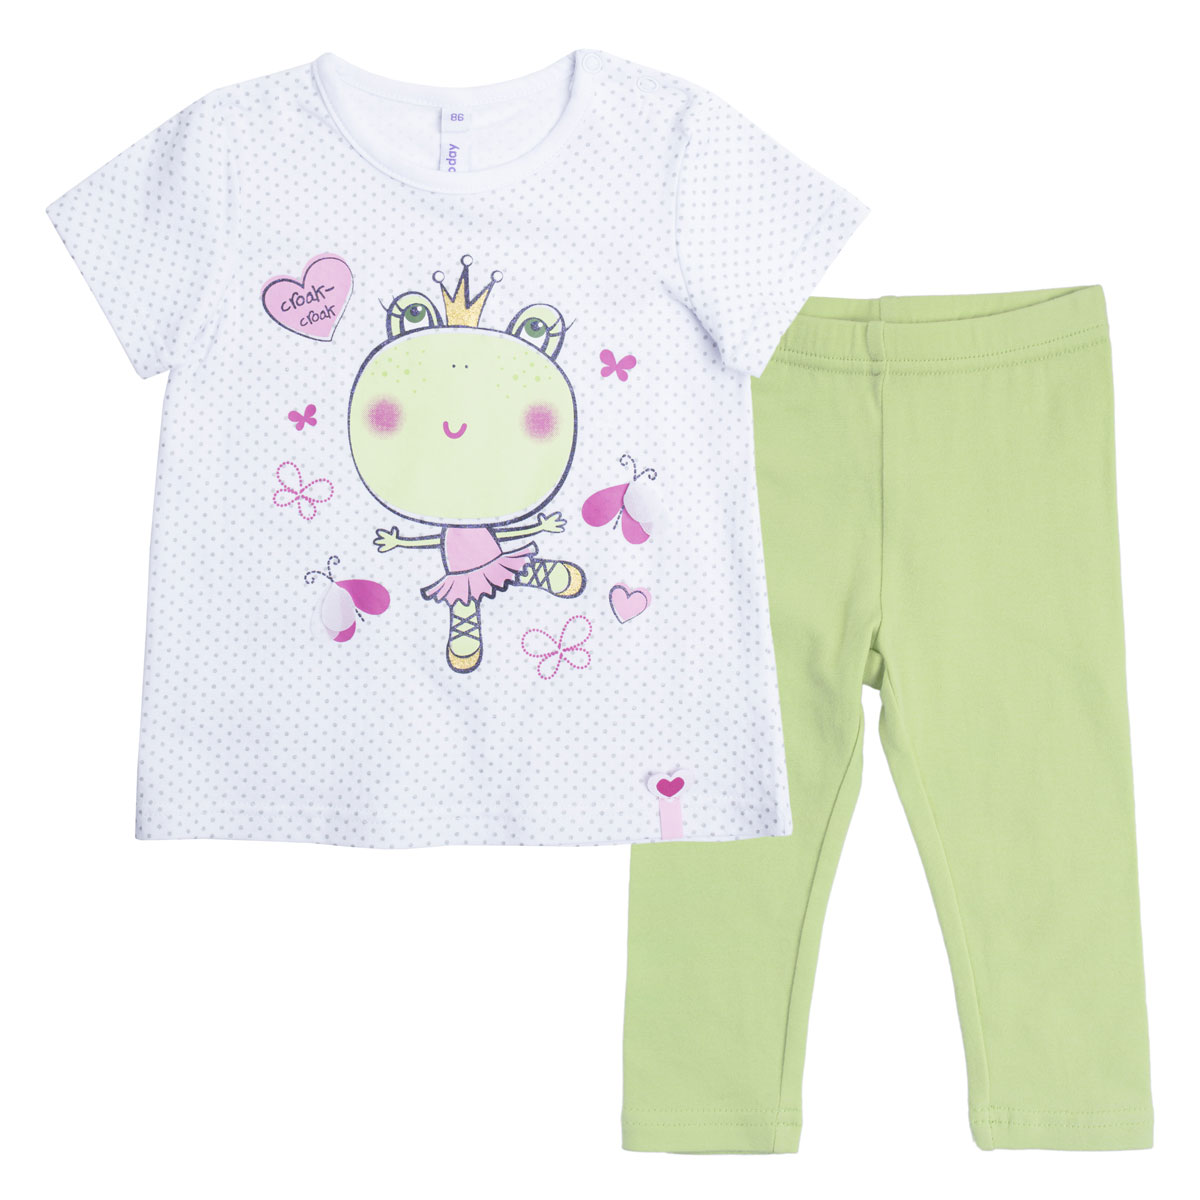 Комплект для девочки PlayToday: футболка, леггинсы, цвет: белый, светло-зеленый. 188068. Размер 80